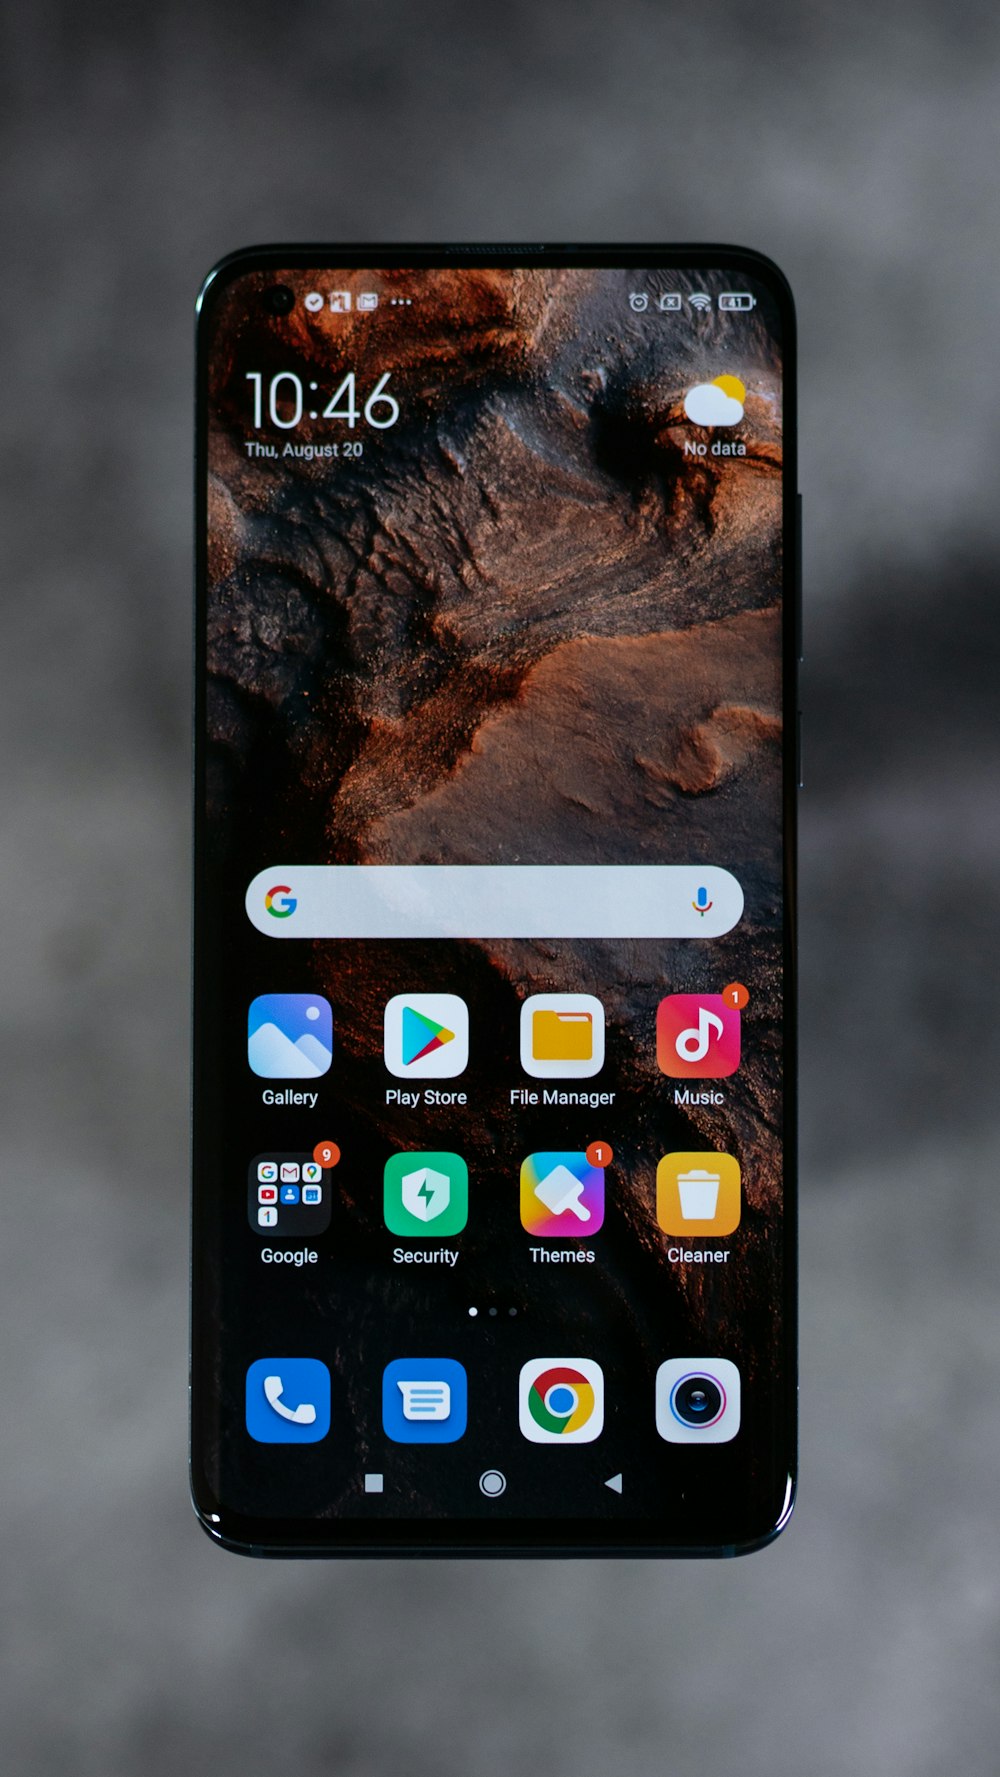 La pantalla del iPhone muestra iconos en la pantalla